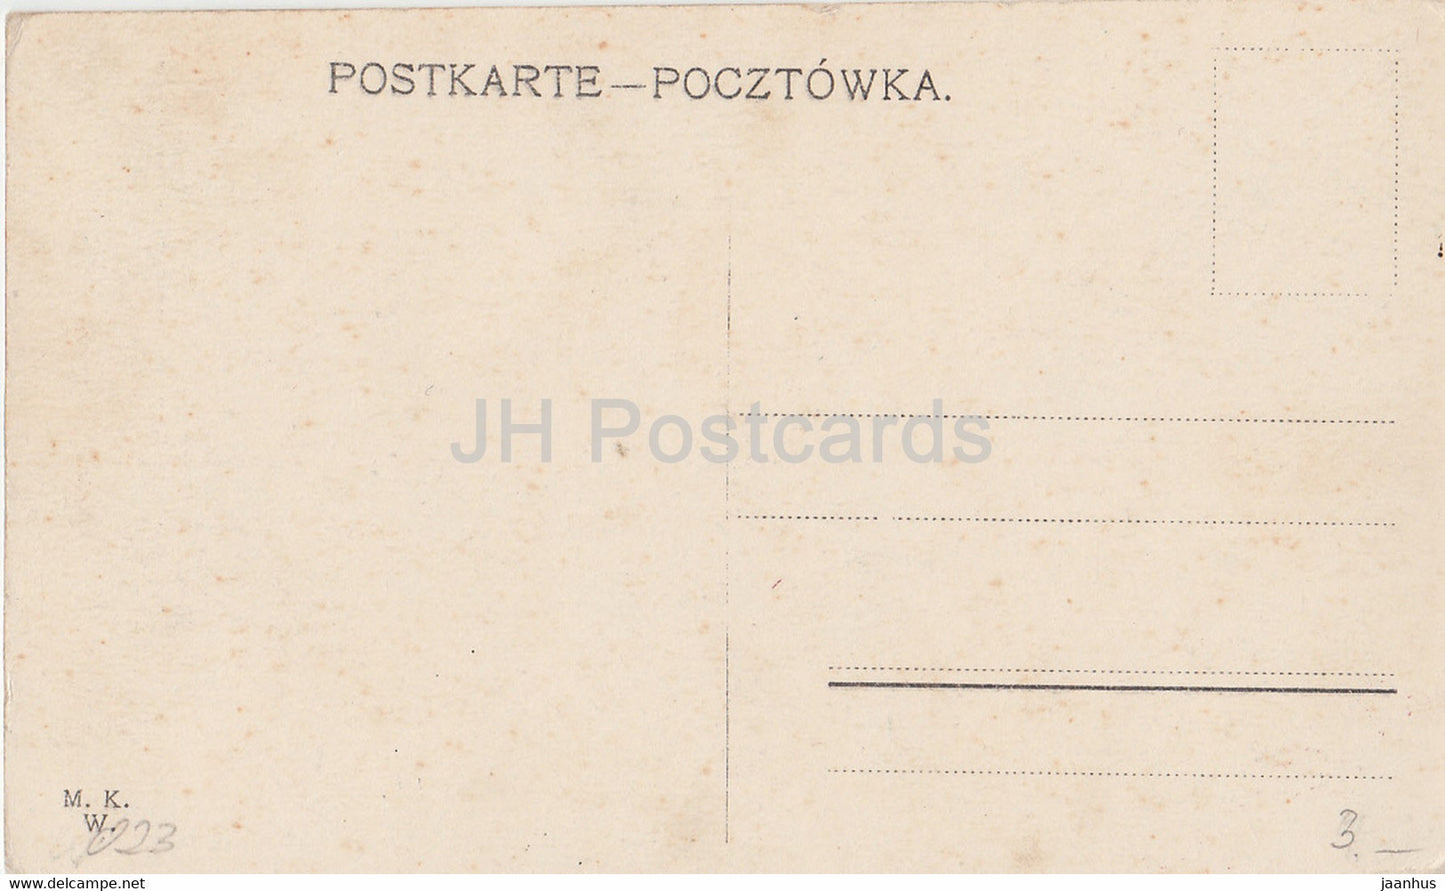 Warschau - Kierbedz Brucke - Warschau - Most Kierbedzia - pont - carte postale ancienne - Pologne - inutilisé